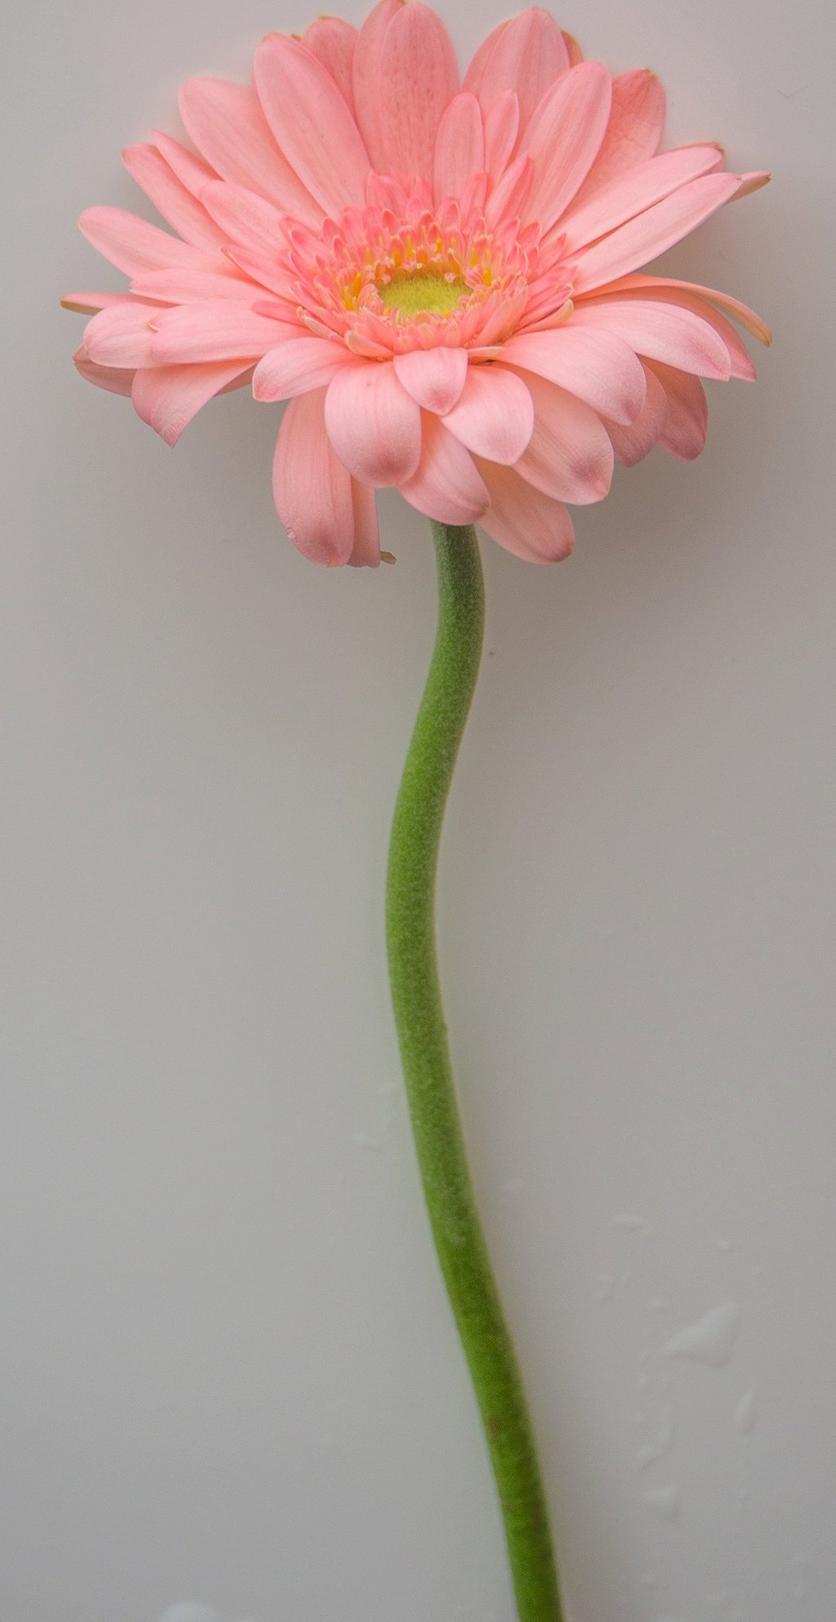 single-gerbera-daisy-pink-flower